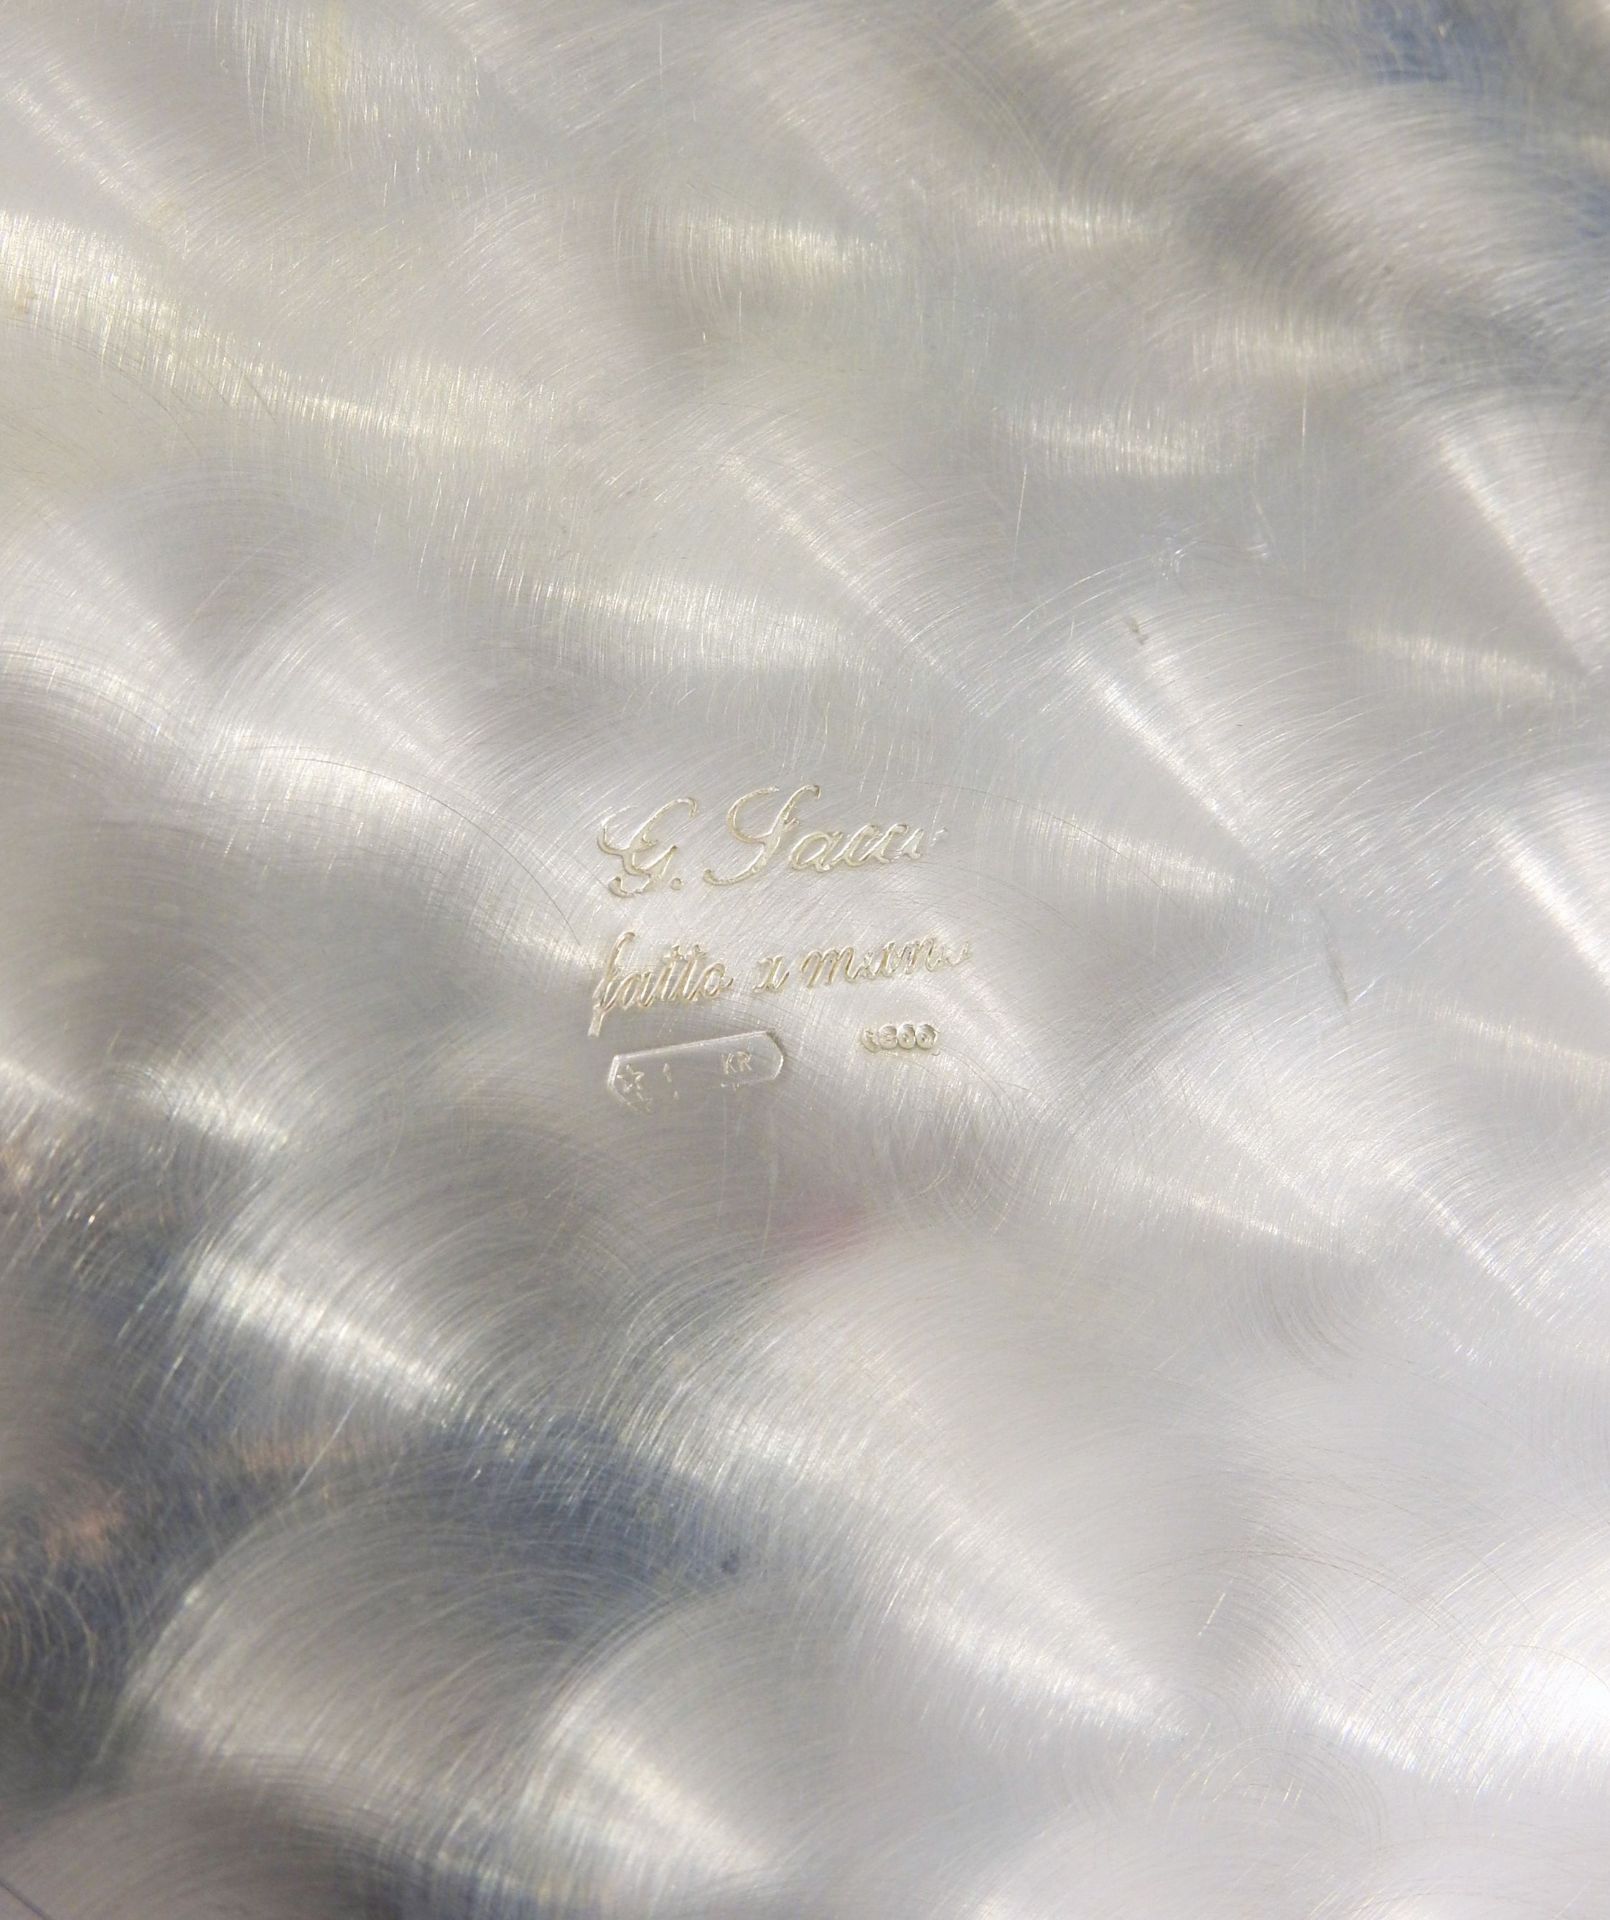 Großer feiner Weinkühler Silber 800, am Boden mit Feingehaltsstempel, Land- und Hers - Bild 2 aus 3